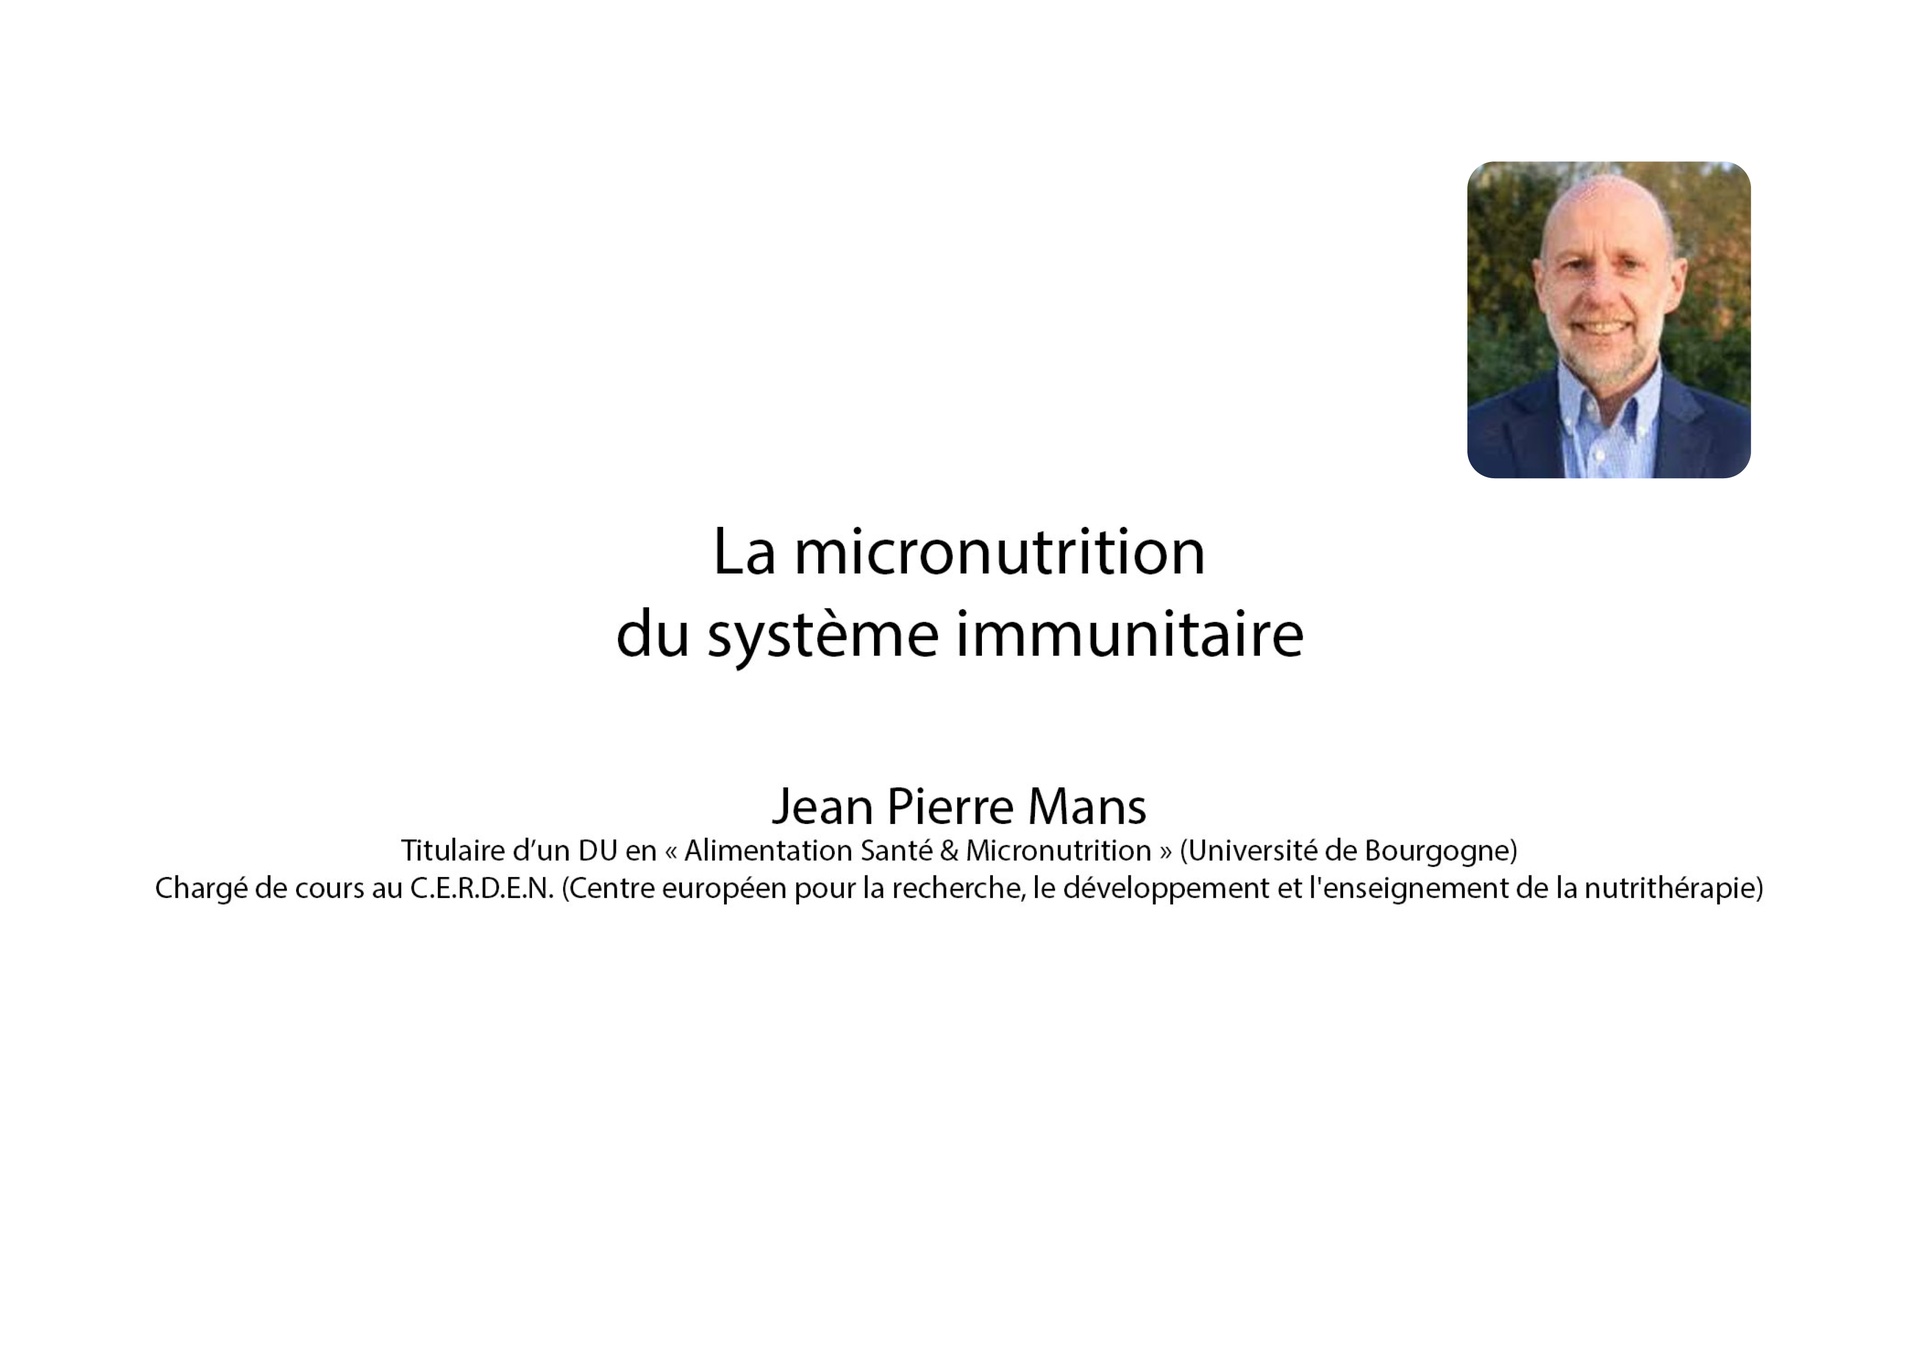 La micronutrition du système immunitaire - JP Mans